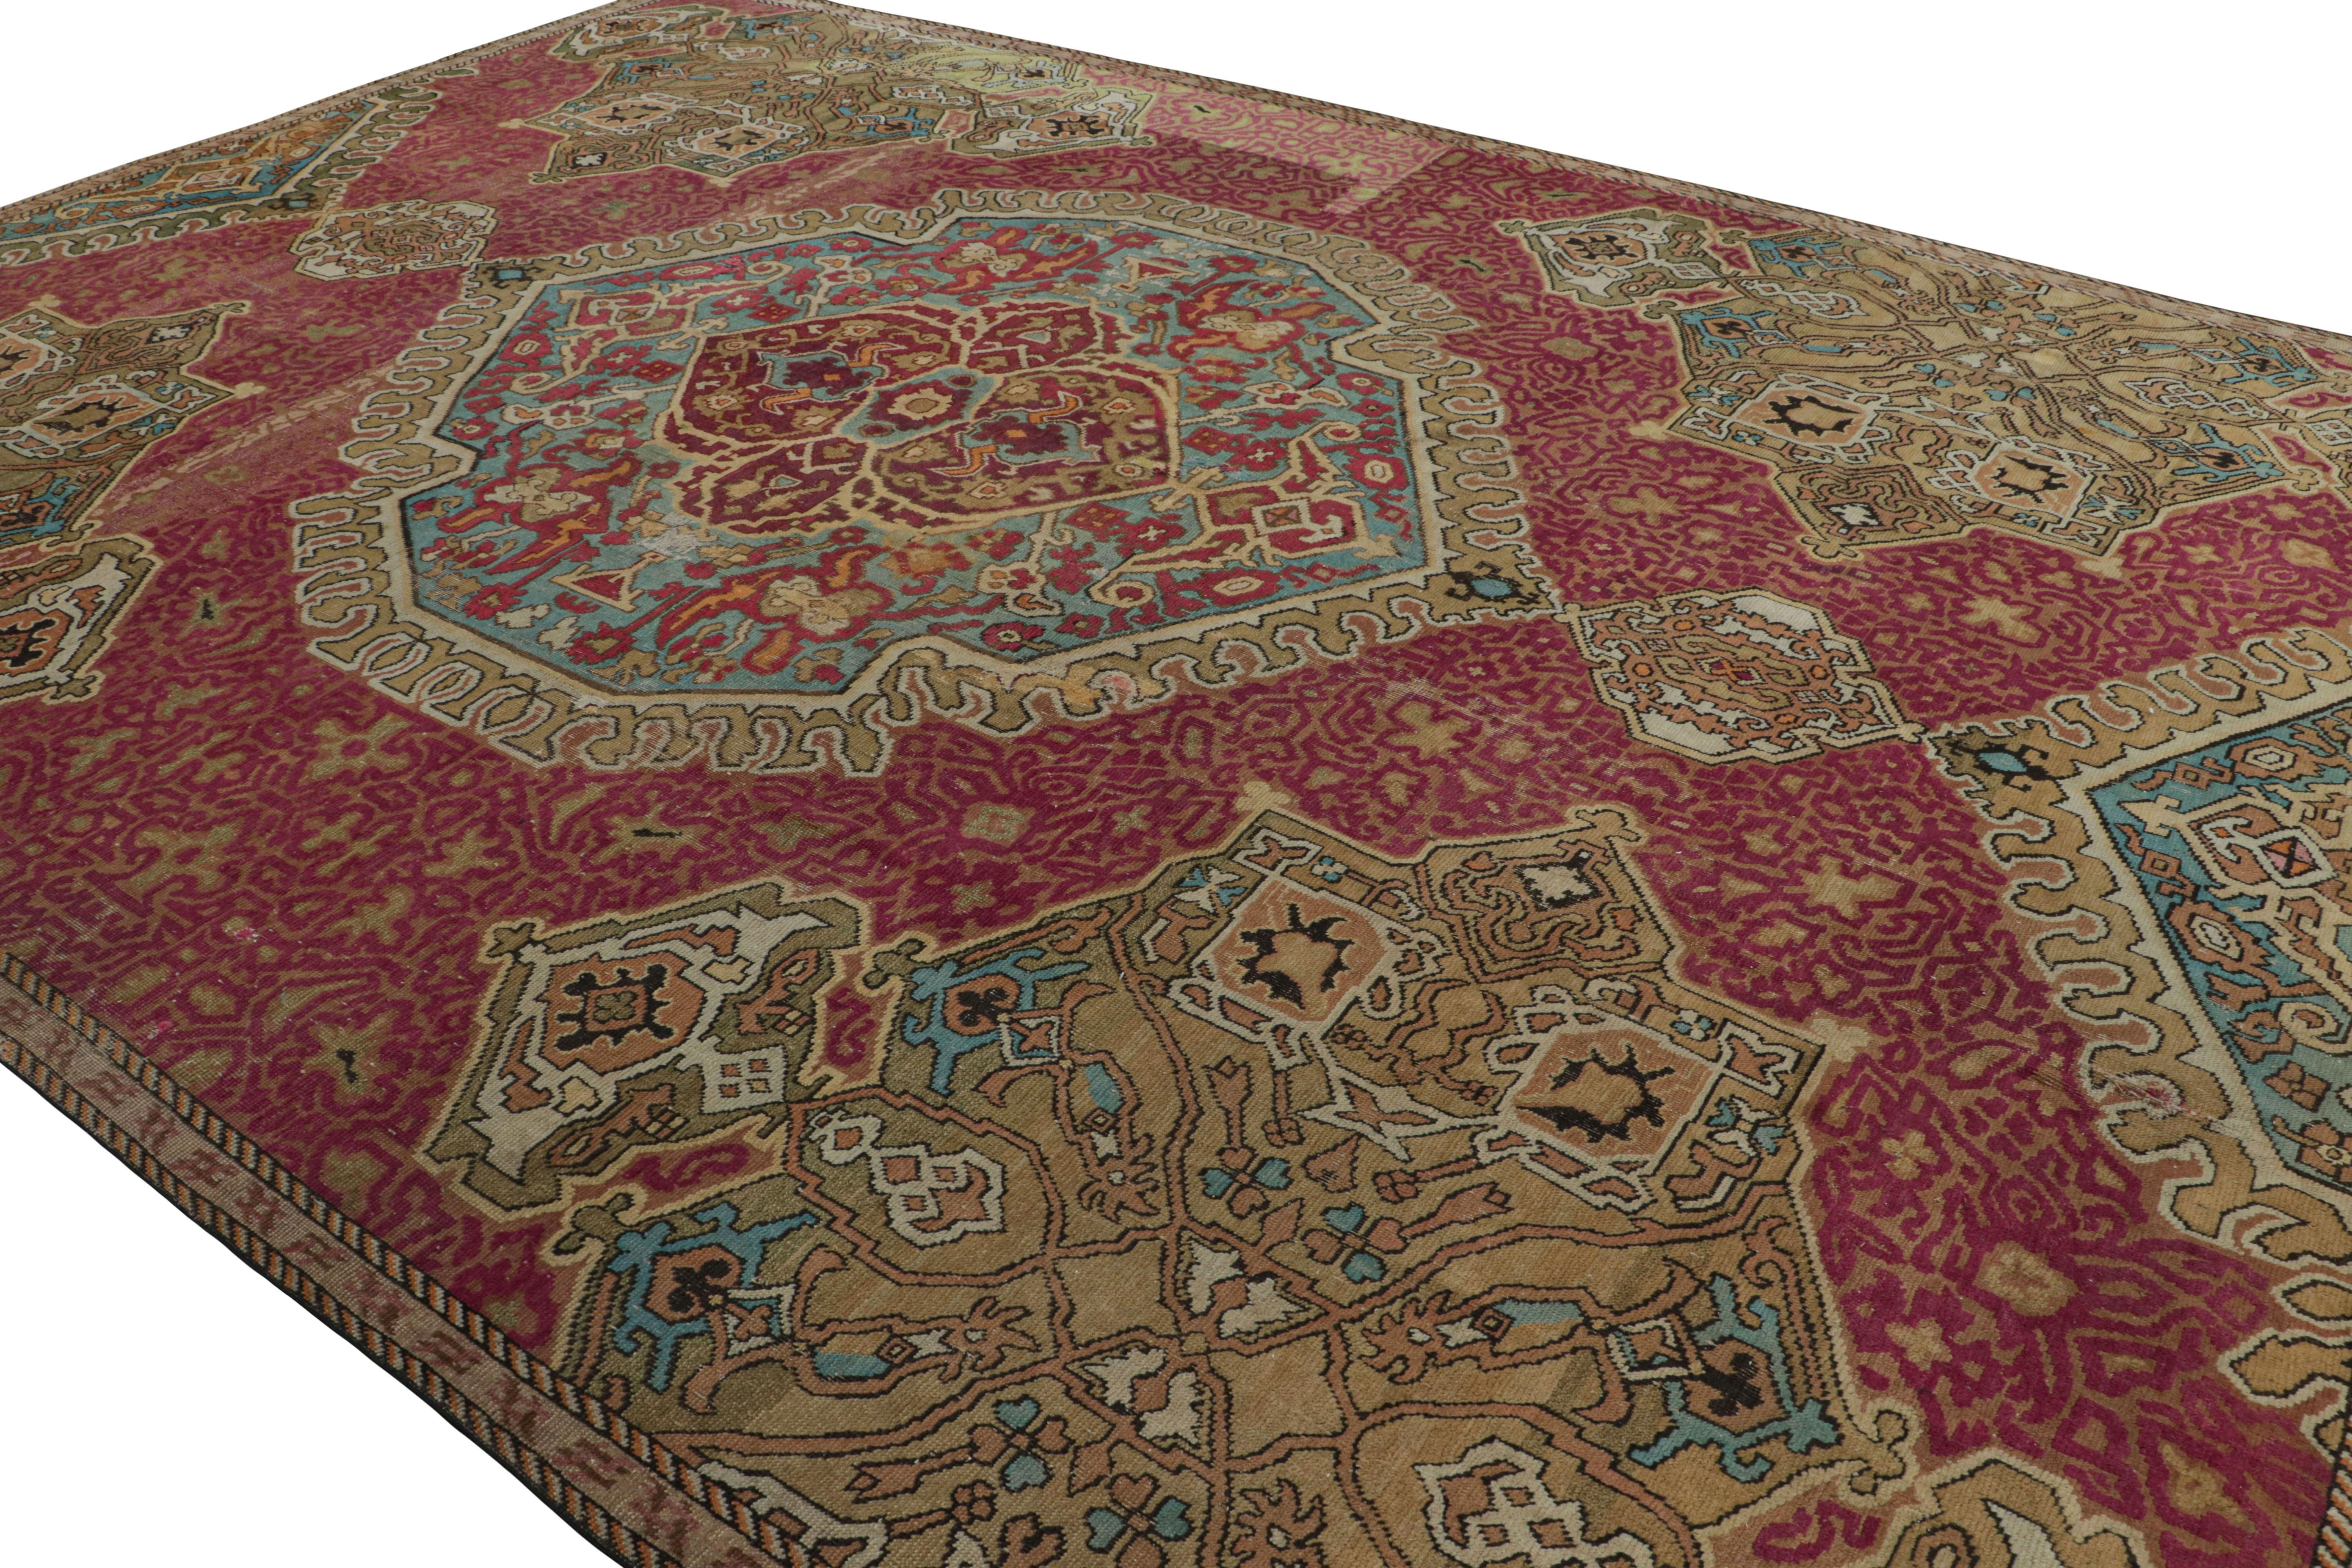 Noué à la main en laine et originaire de France vers 1740-1750, ce tapis ancien 11x15 est une acquisition rare, tant par son époque que par son design - probablement parmi les œuvres de Jean-Joseph Dumonds.   

Sur le Design : 

Les connaisseurs